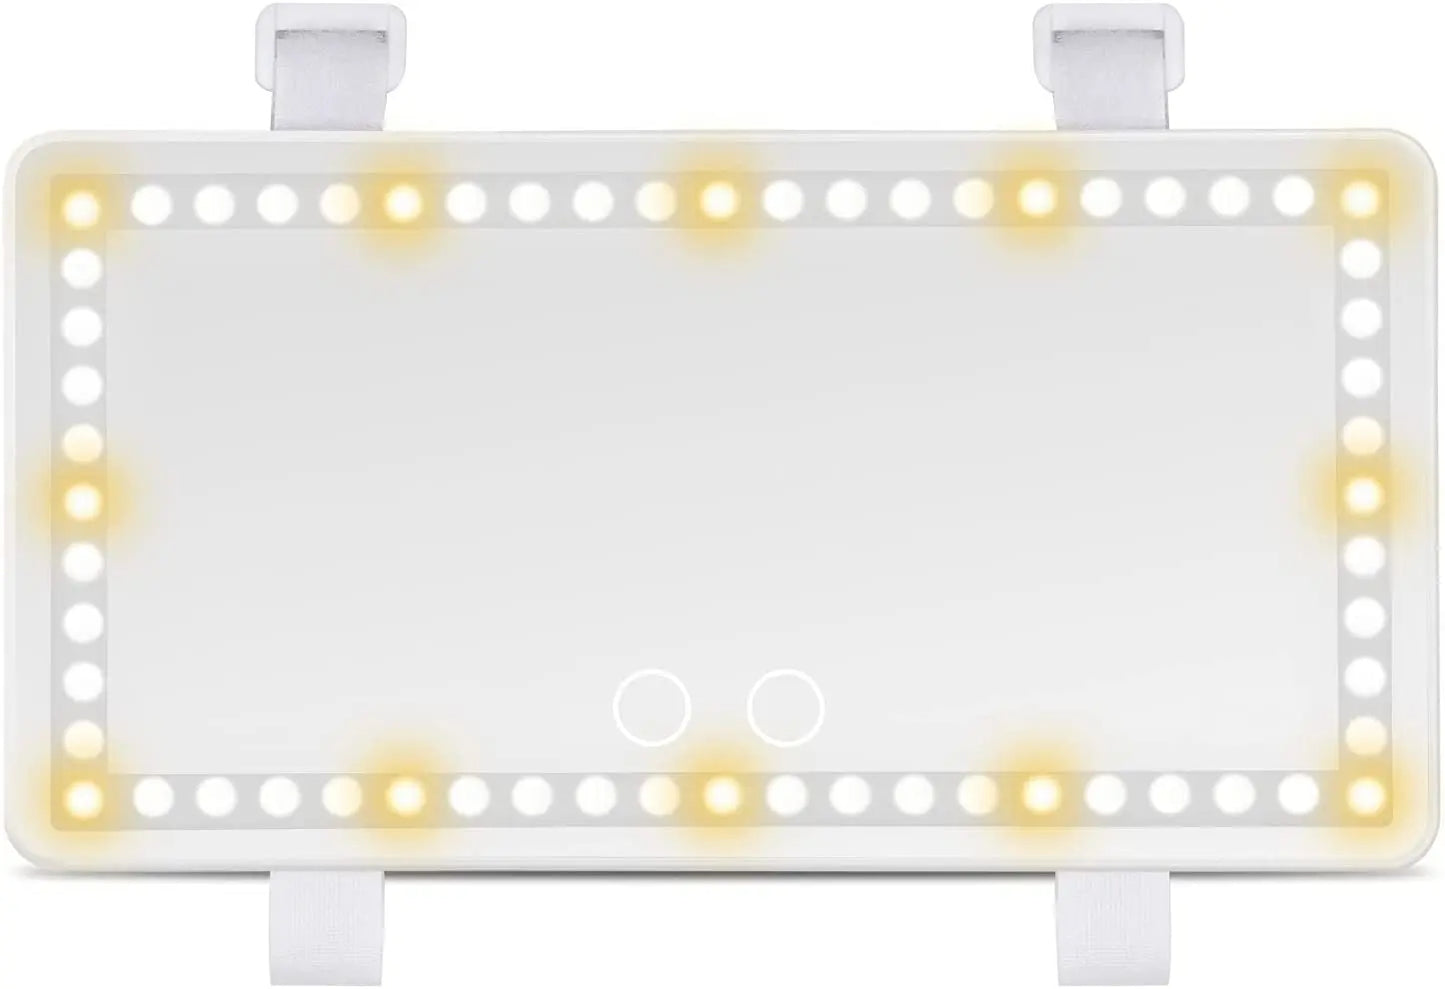 Car Visor Mirror with LED Lights - Deliverrpk